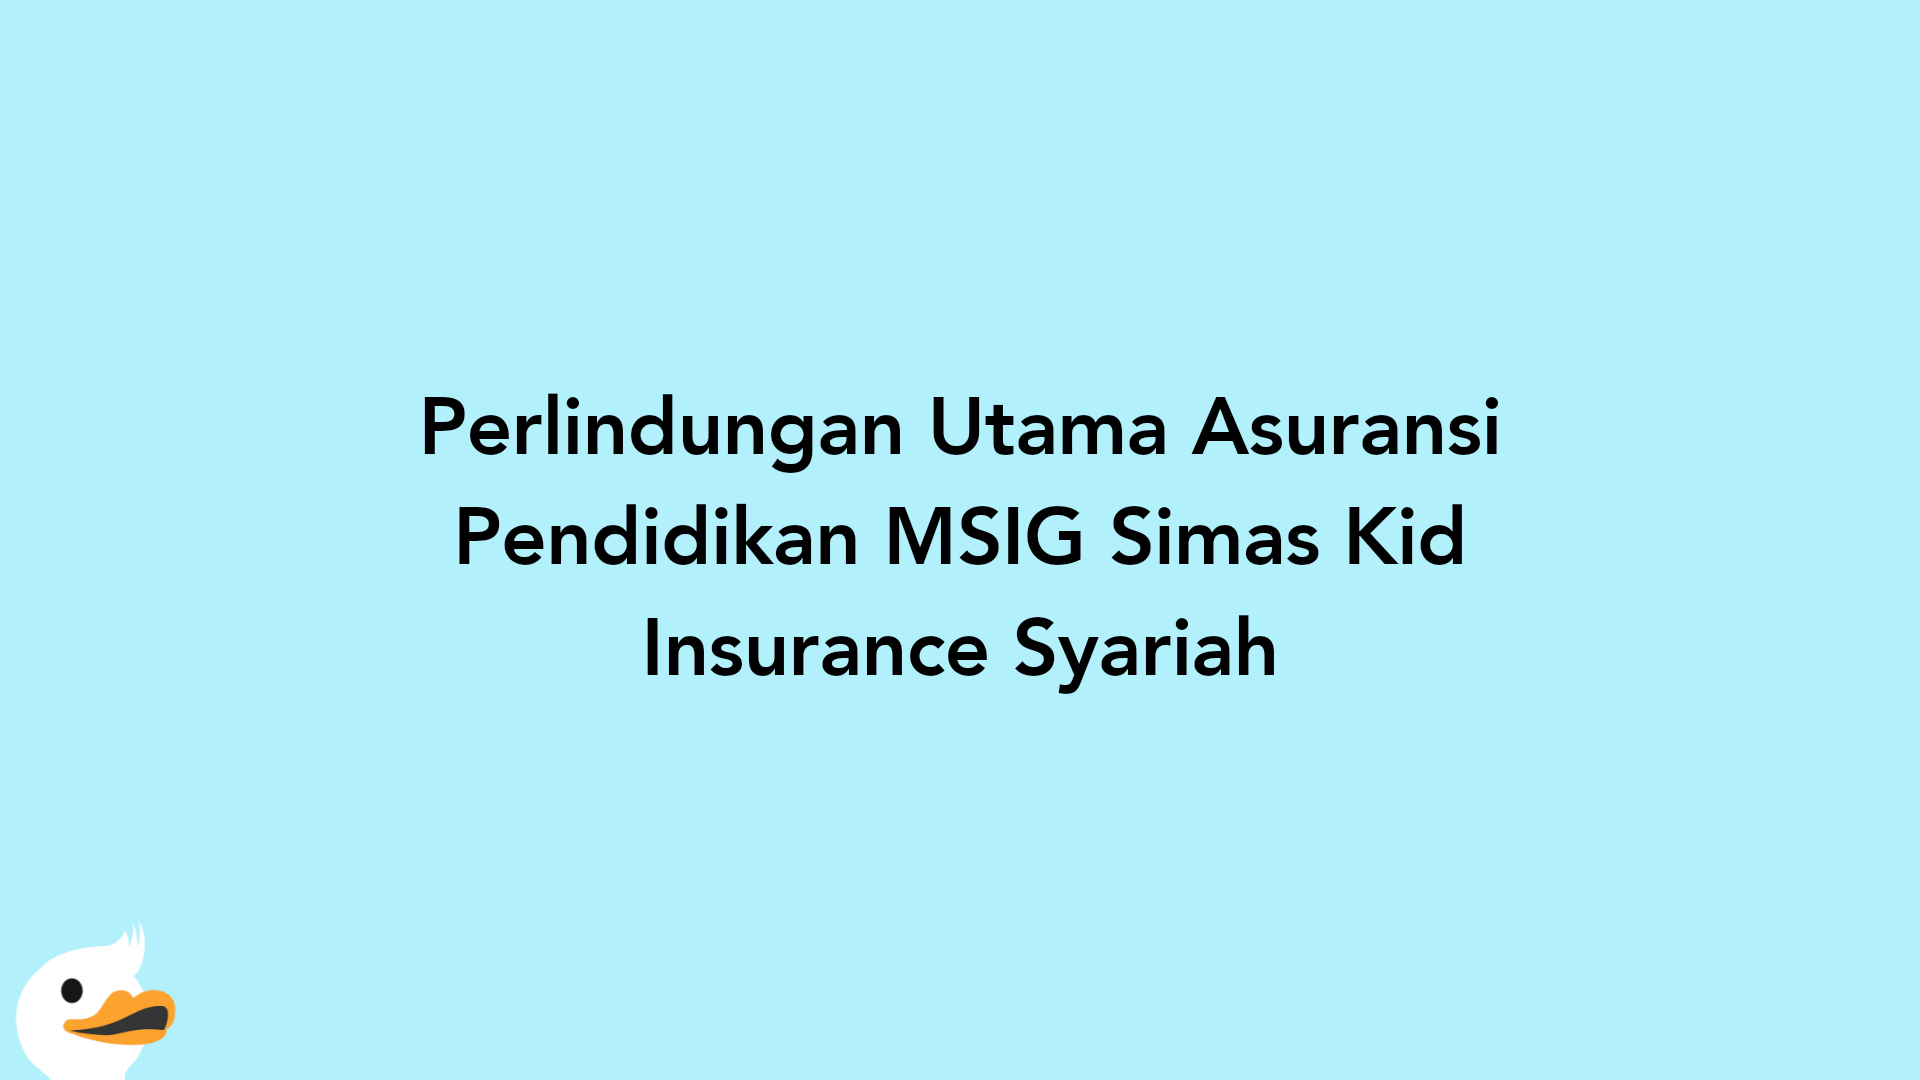 Perlindungan Utama Asuransi Pendidikan MSIG Simas Kid Insurance Syariah